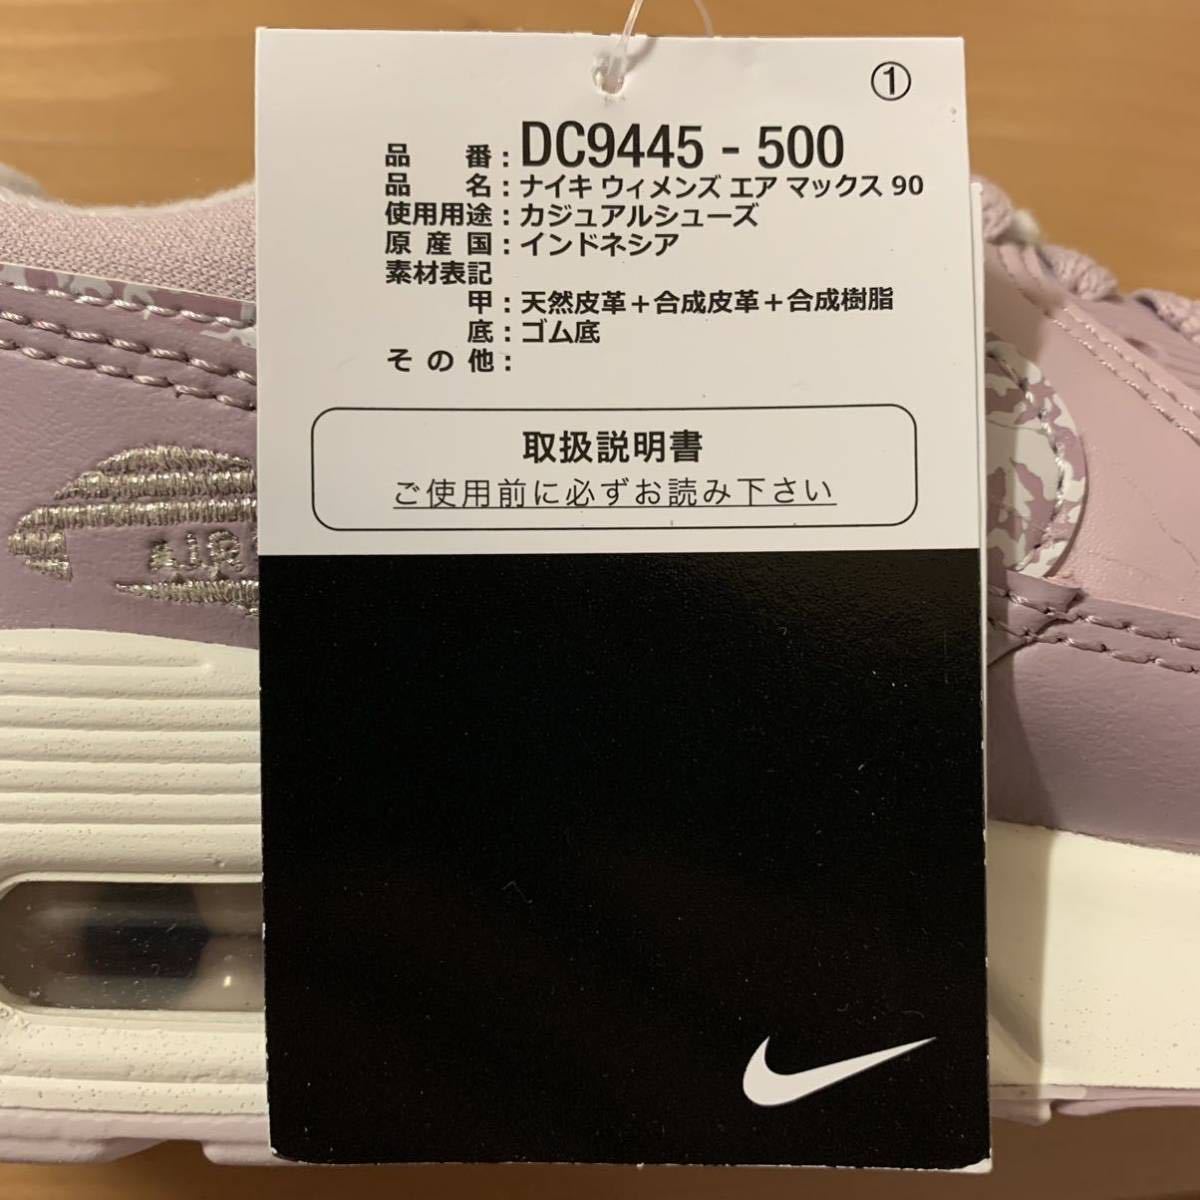 NIKE W AIR MAX 90 Nike wi мужской air max 90 спортивные туфли розовый лиловый фиолетовый US7.5 24.5cm внутренний стандартный товар новый товар не использовался ограничение популярный редкость 